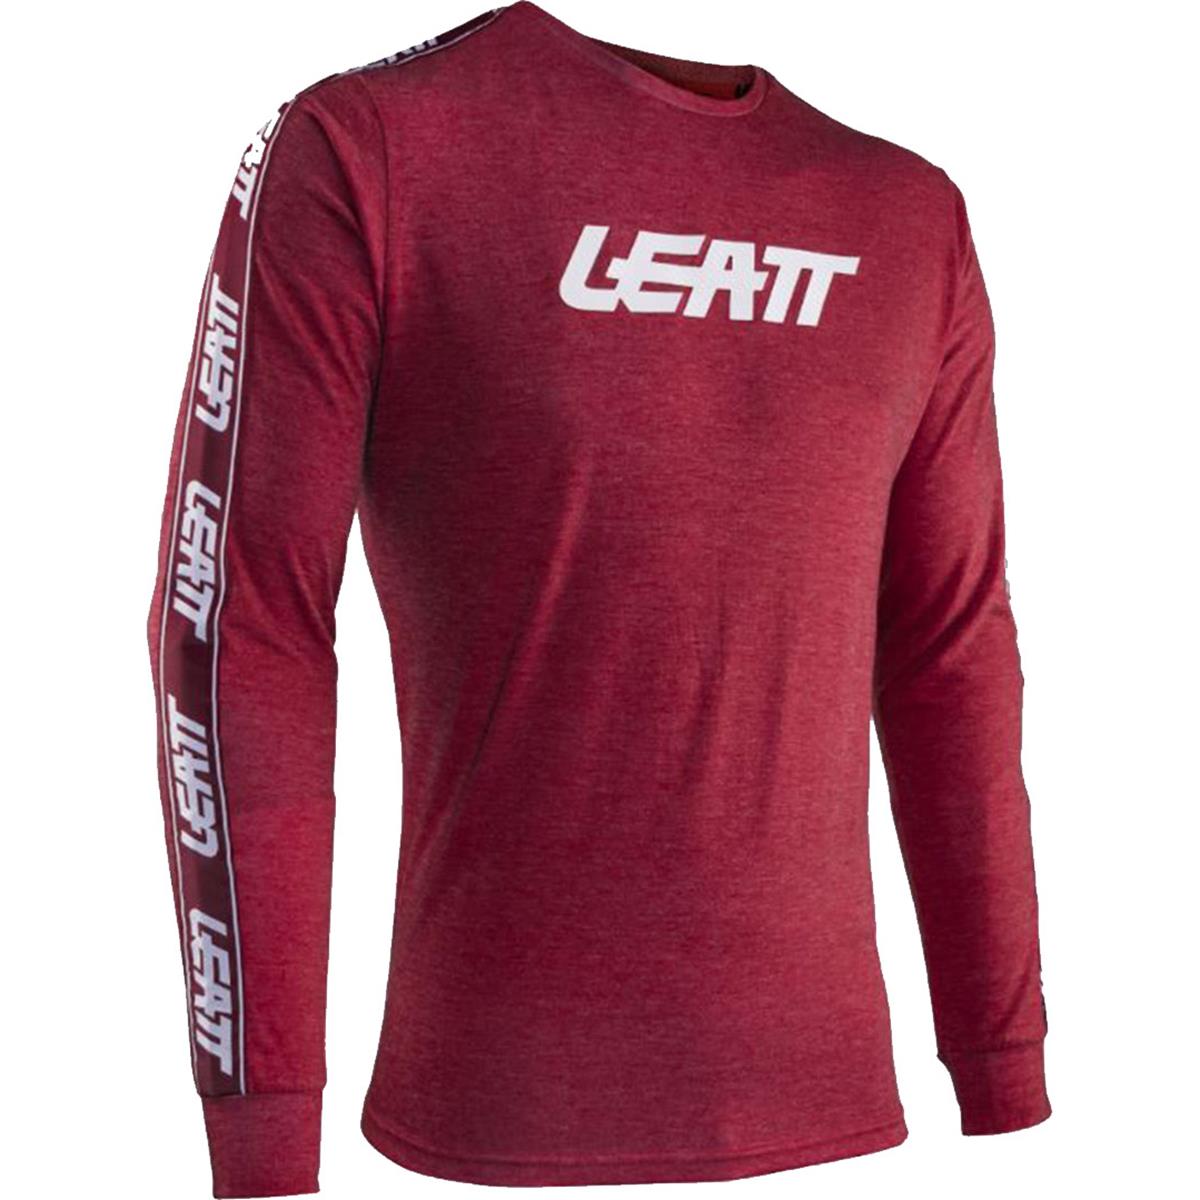 Leatt T-Shirt Manches Longues Premium V24 Ruby